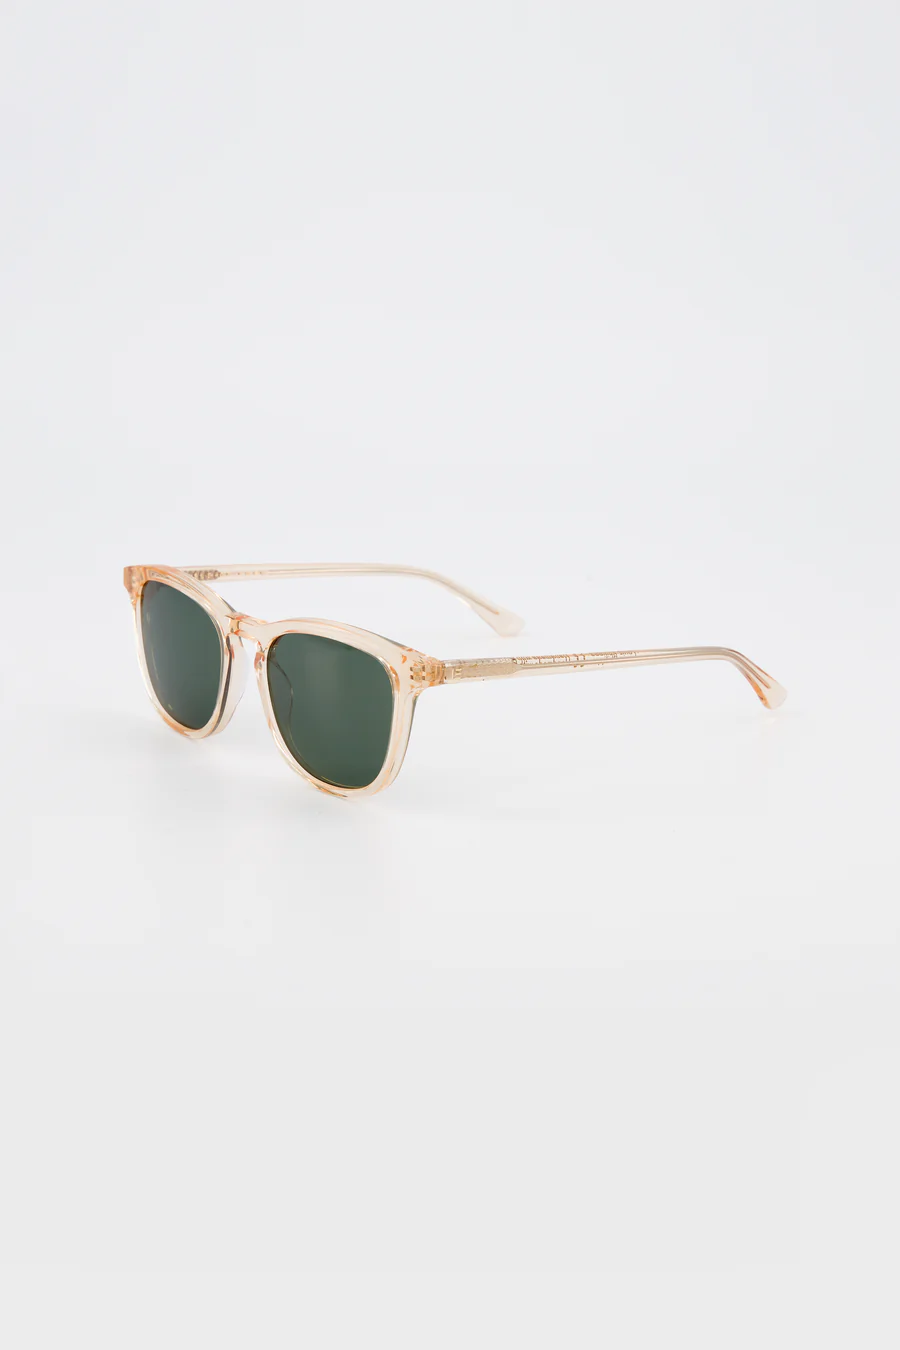 Louis Philippe Sunglasses